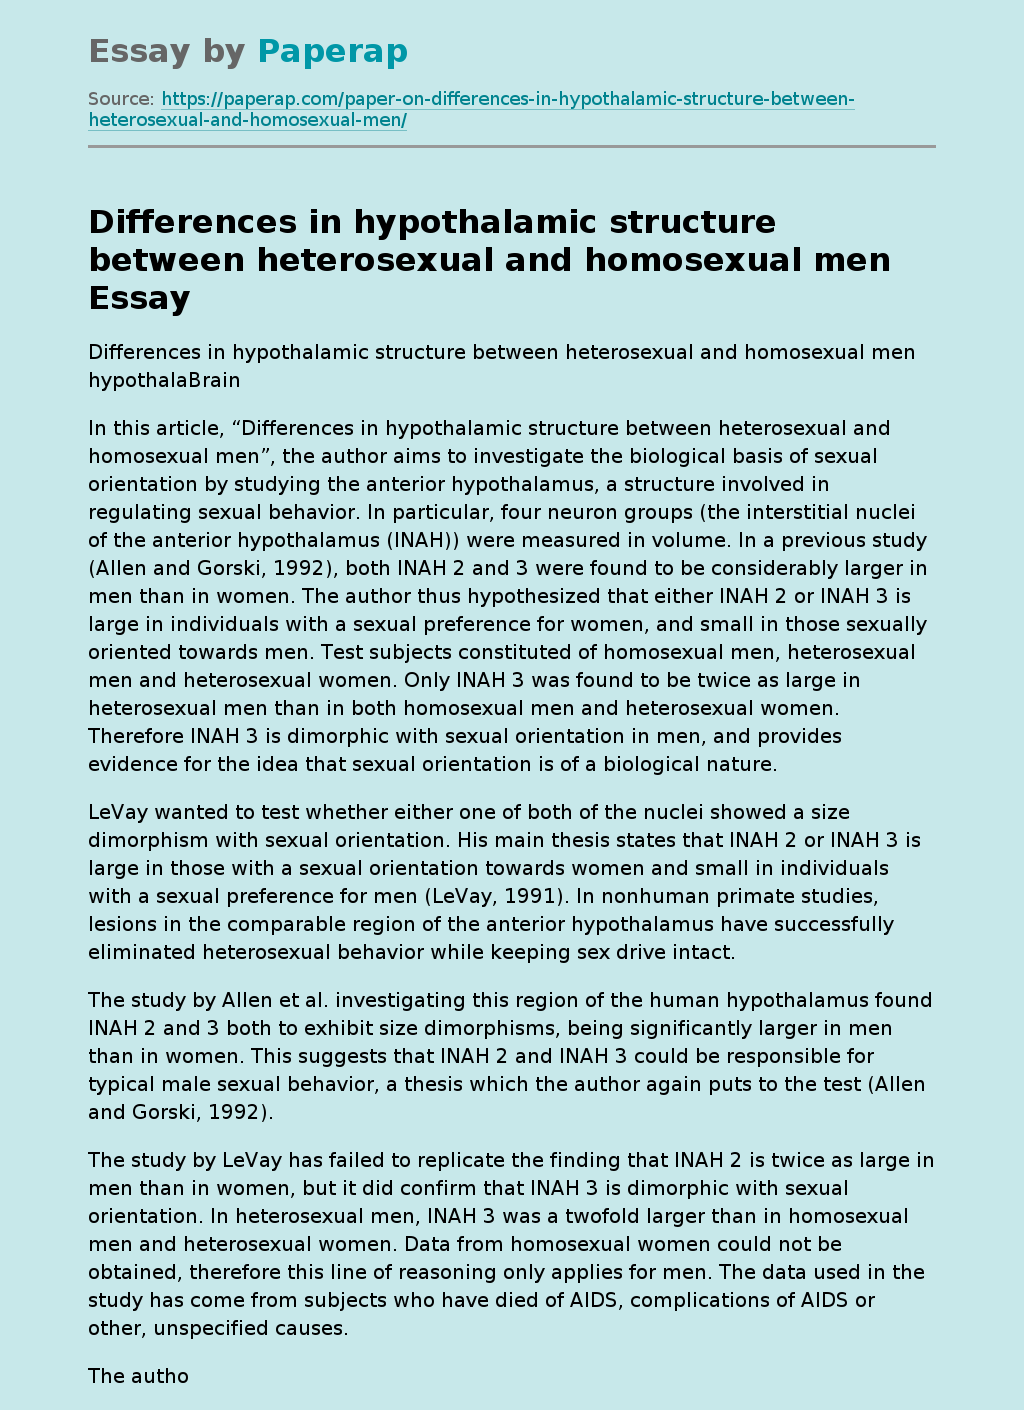 Differences in hypothalamic structure between heterosexual and homosexual men